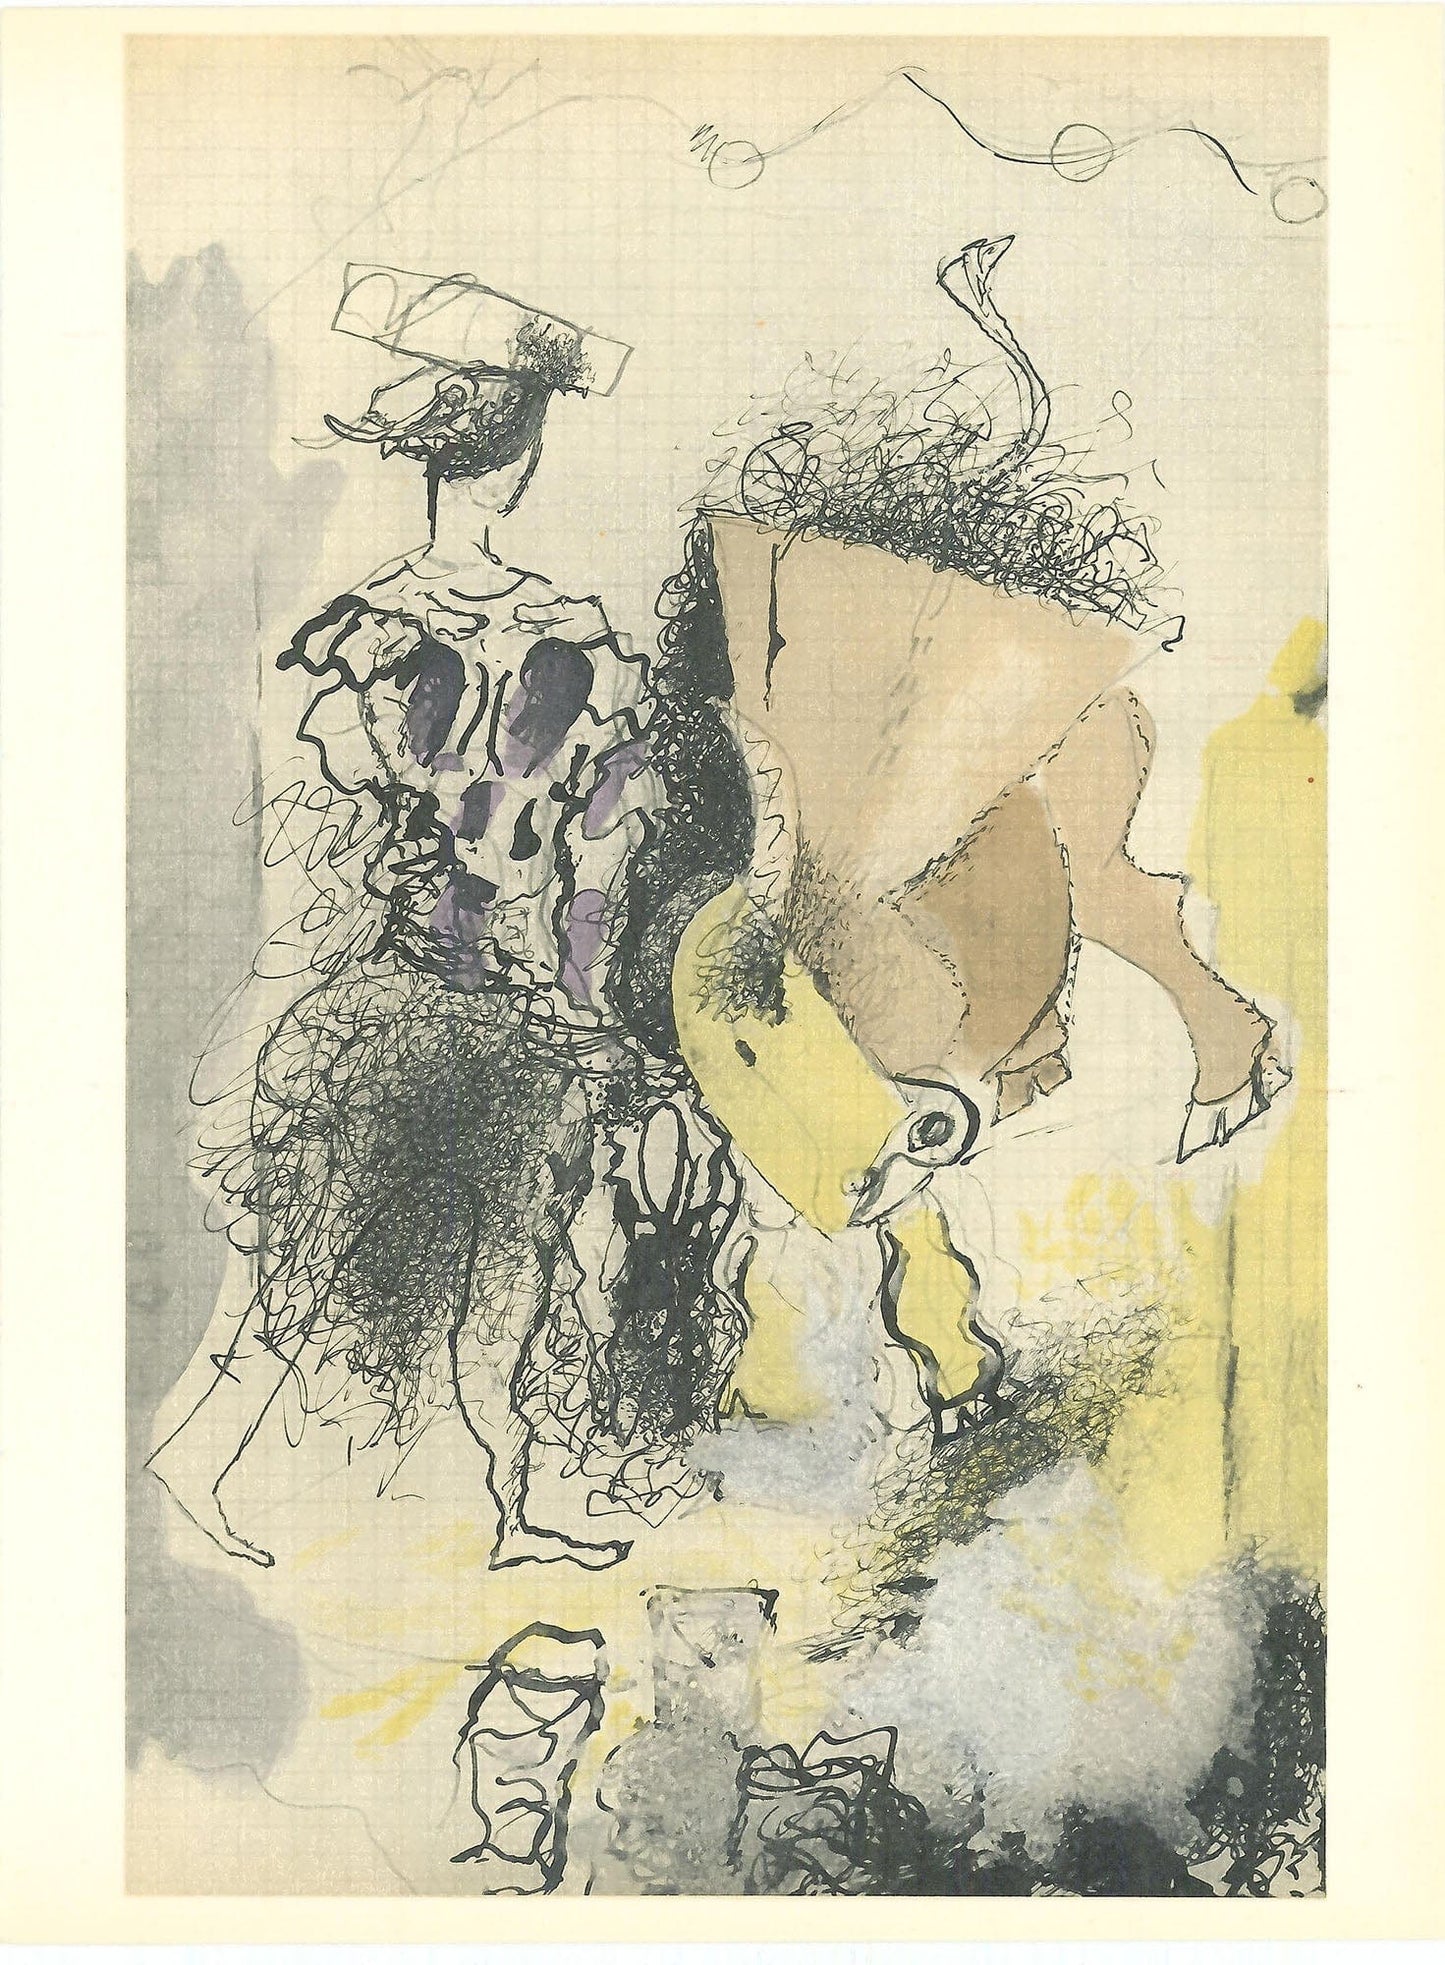 Georges Braque, "Untitled VIII" ZOOM Vol. 8 No. 31 ET 32 lithograph verve